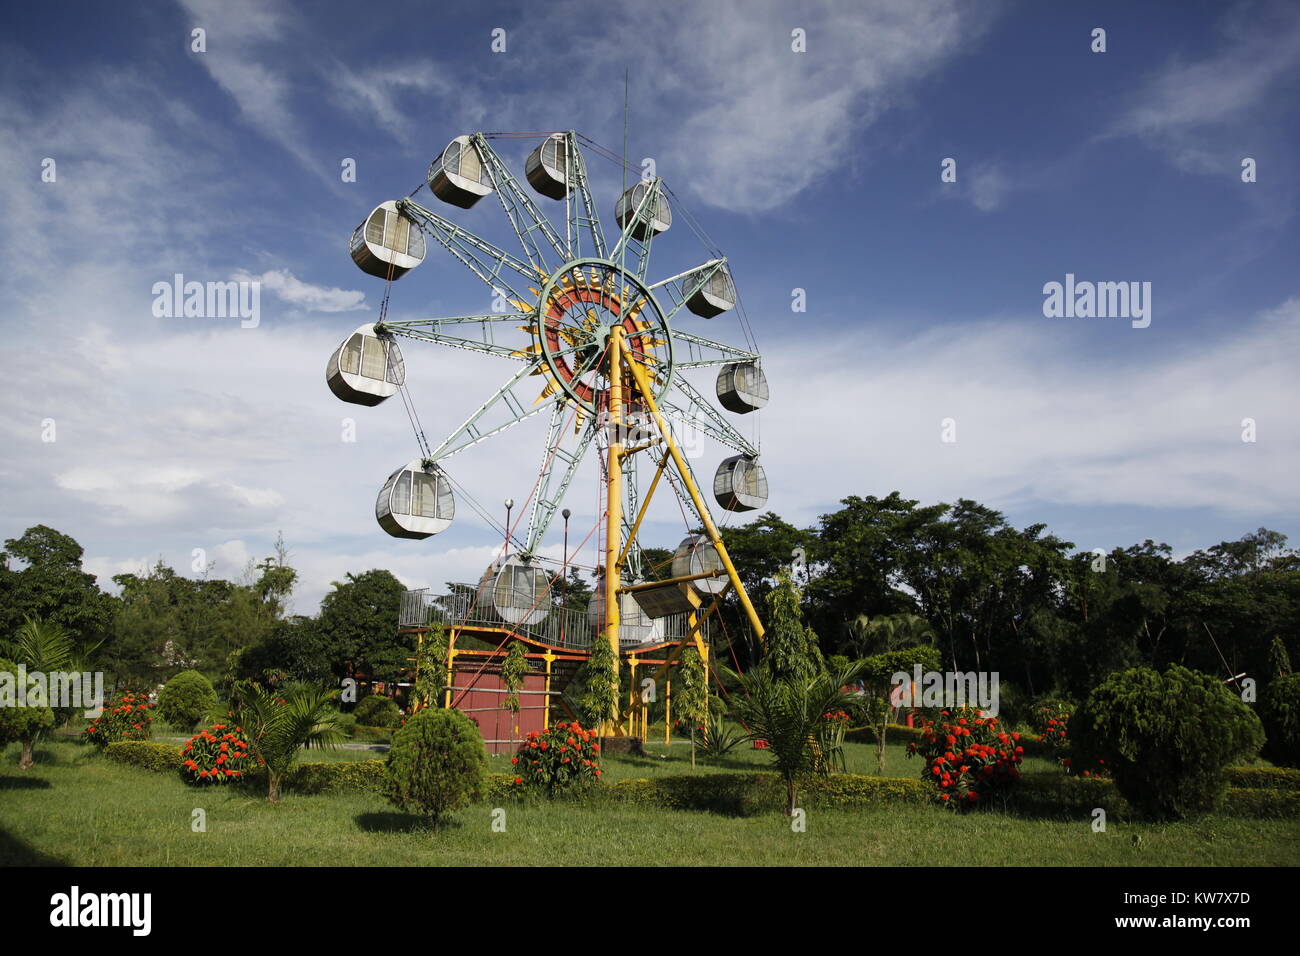 Ferris Wheel, Theme Park. Bangladesh Stock Photo